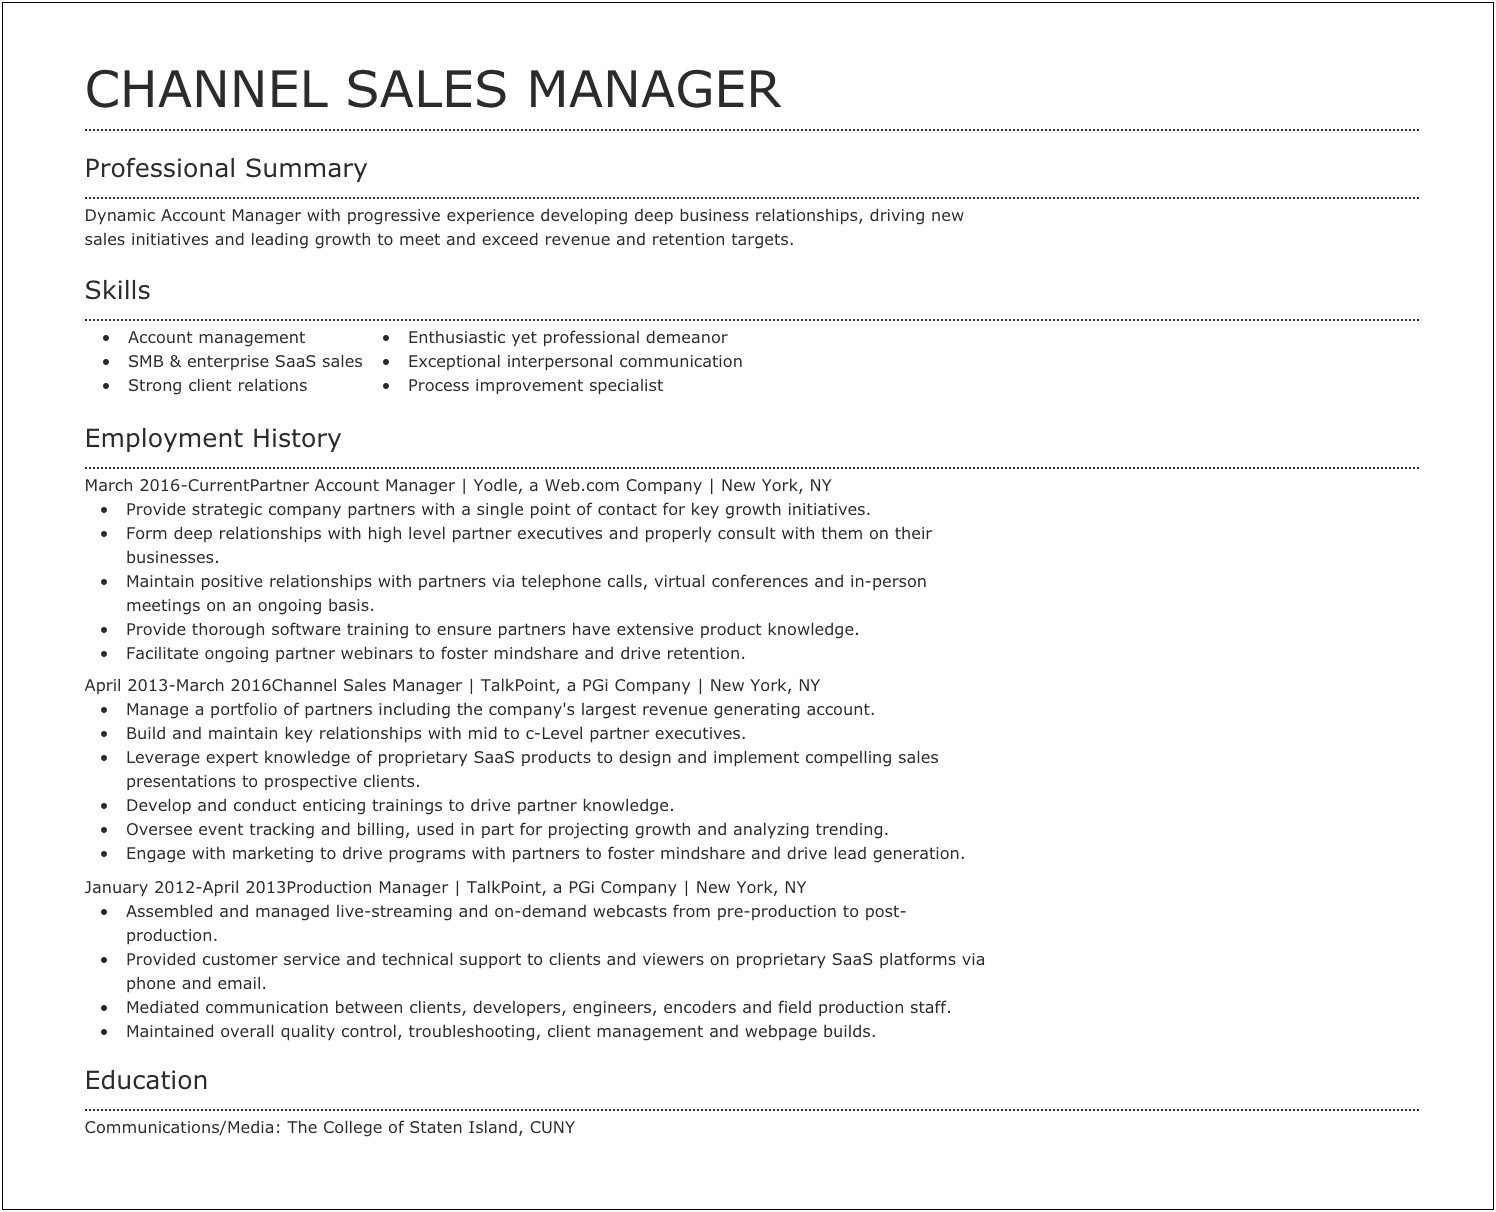 Resume Skills Based Sales Management